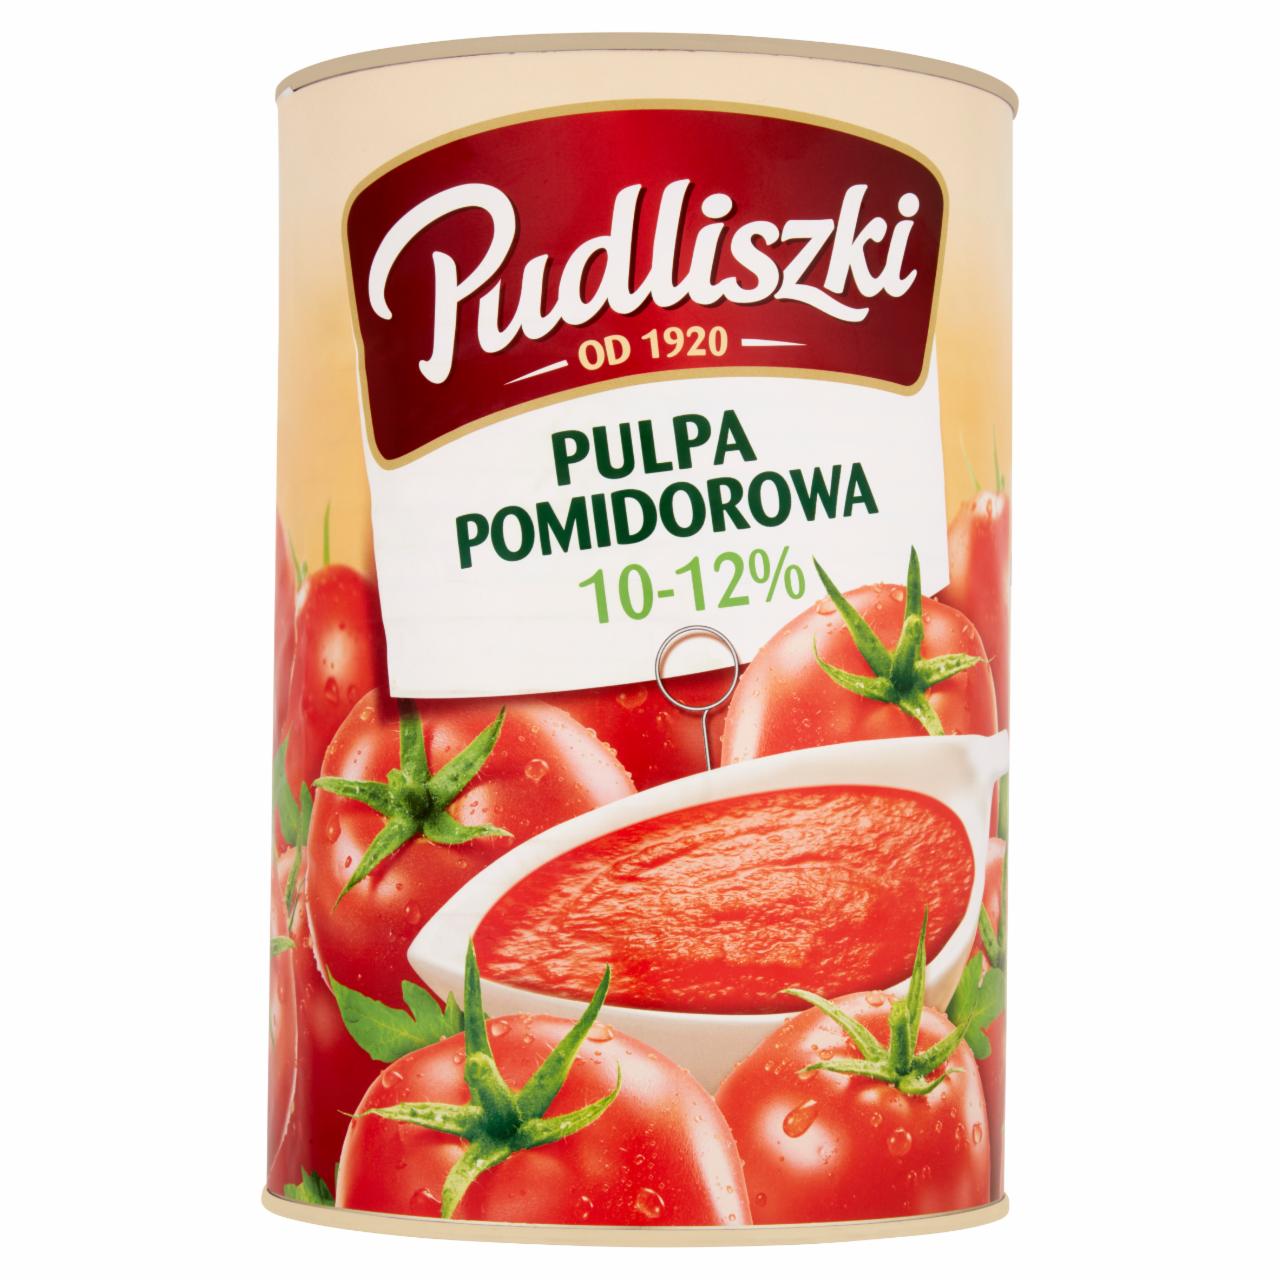 Zdjęcia - Pudliszki Pulpa pomidorowa 10-12% 4,1 kg